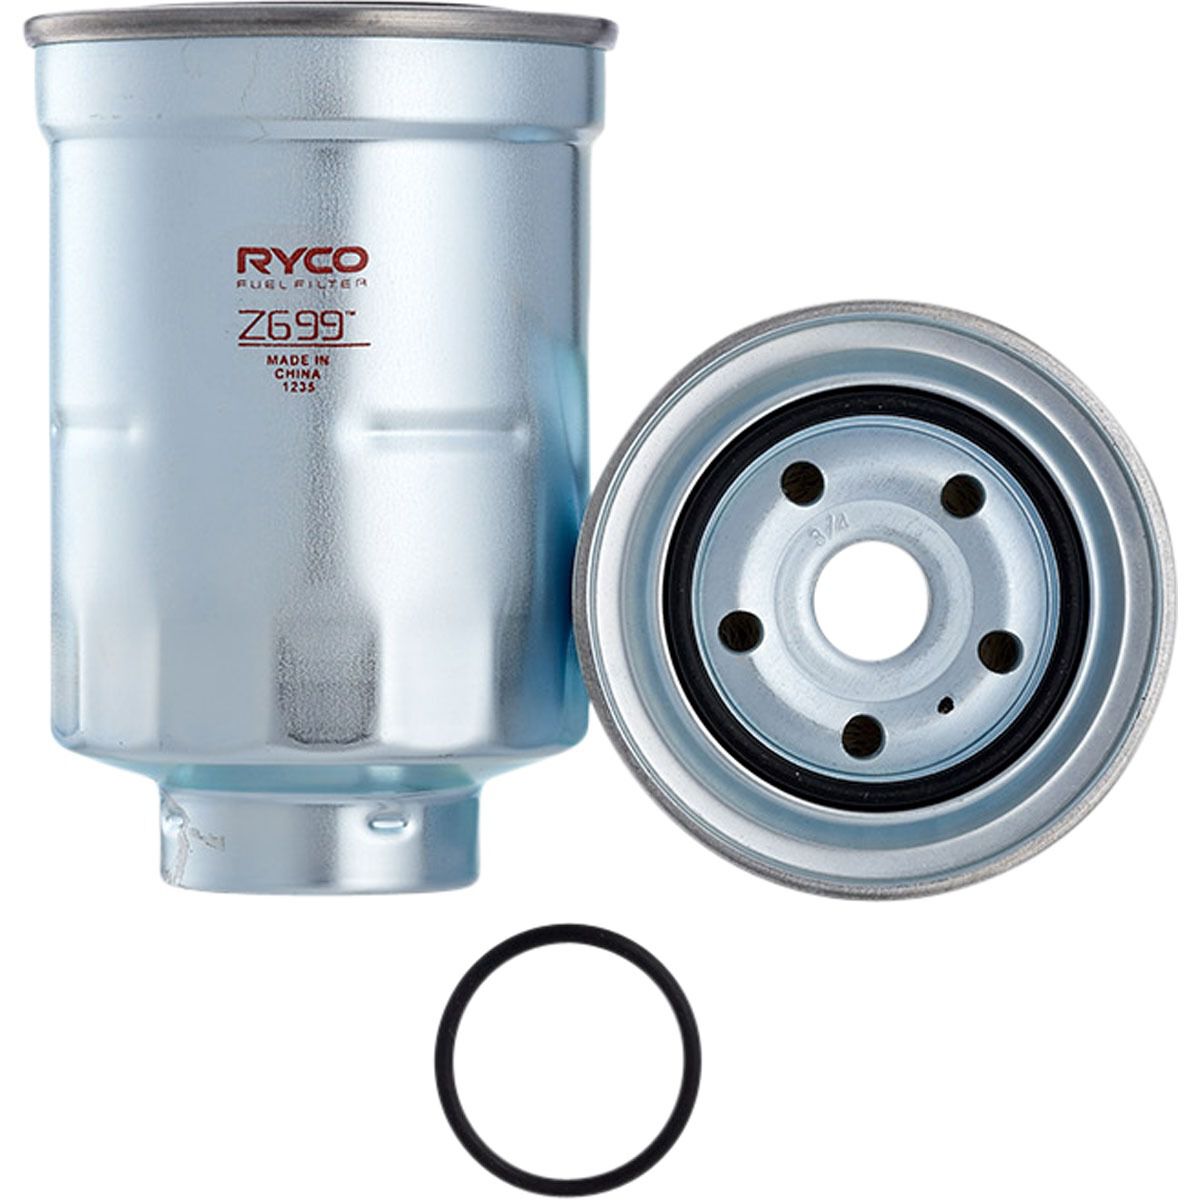 Ryco Fuel Filter - Z699, , scaau_hi-res